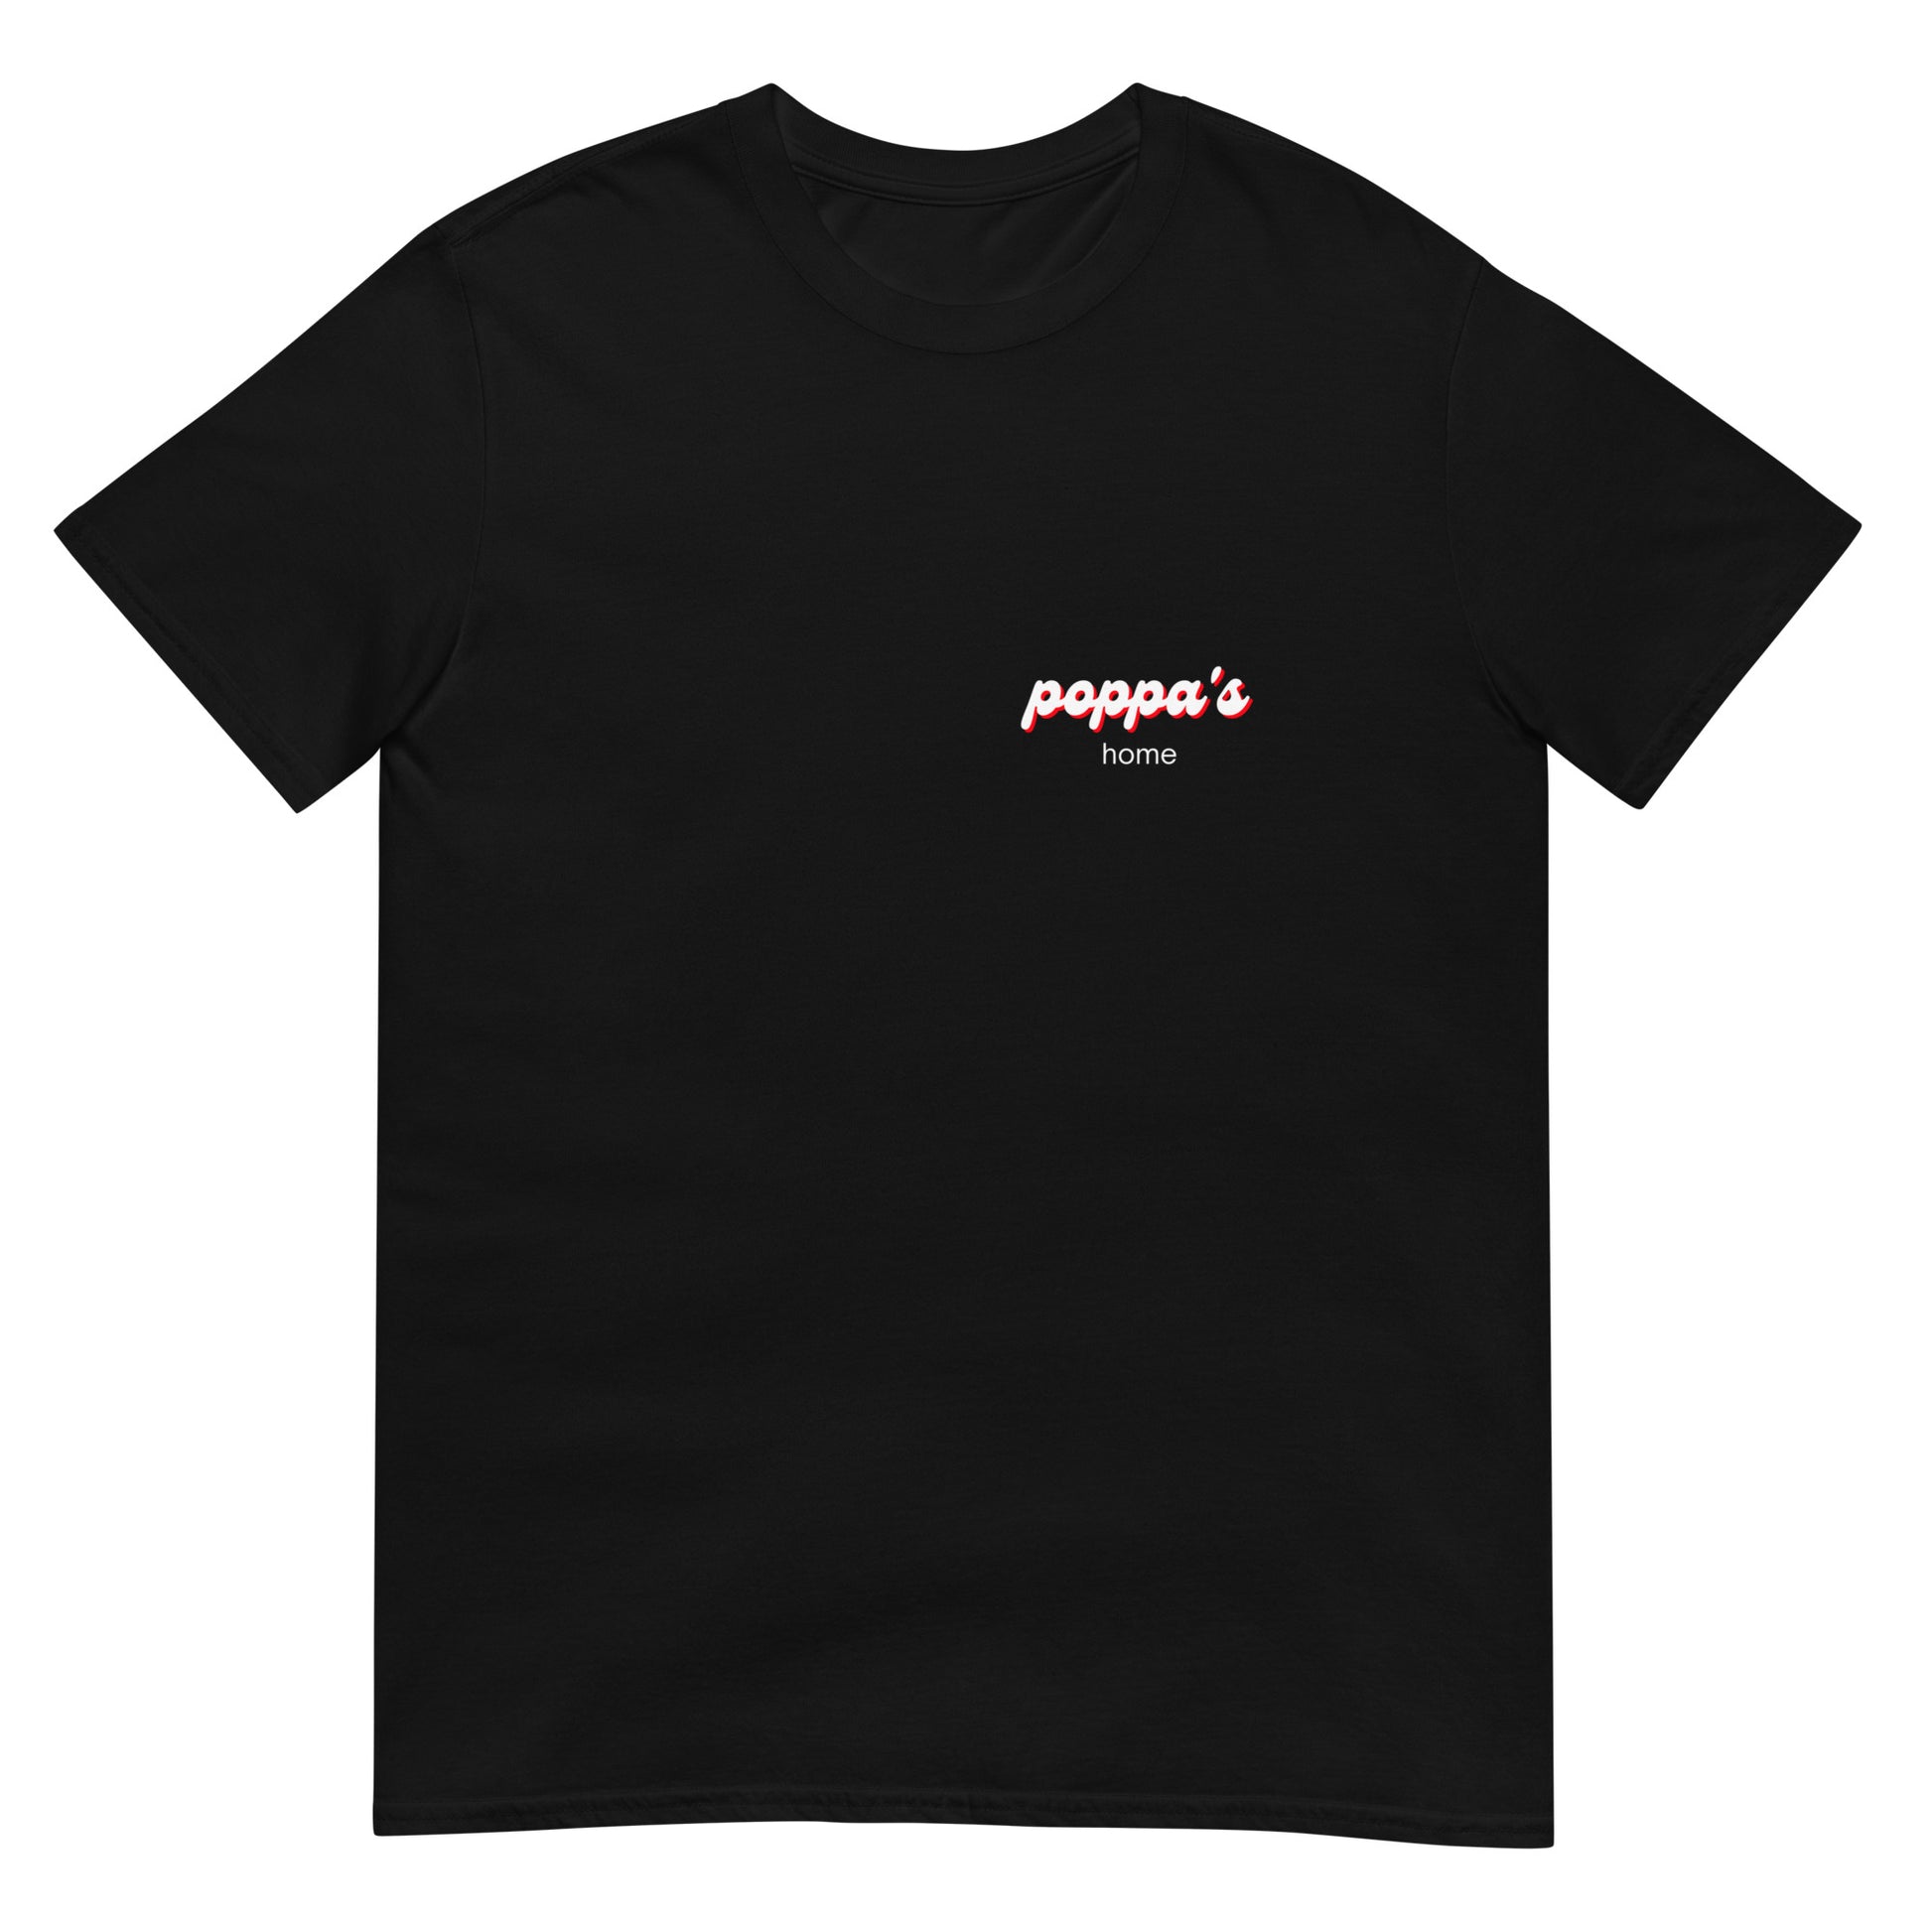 tunota t-shirts - Lapiz Conciente El Papa del Rap Unisex Essential T-Shirt  for Sale by jatoso